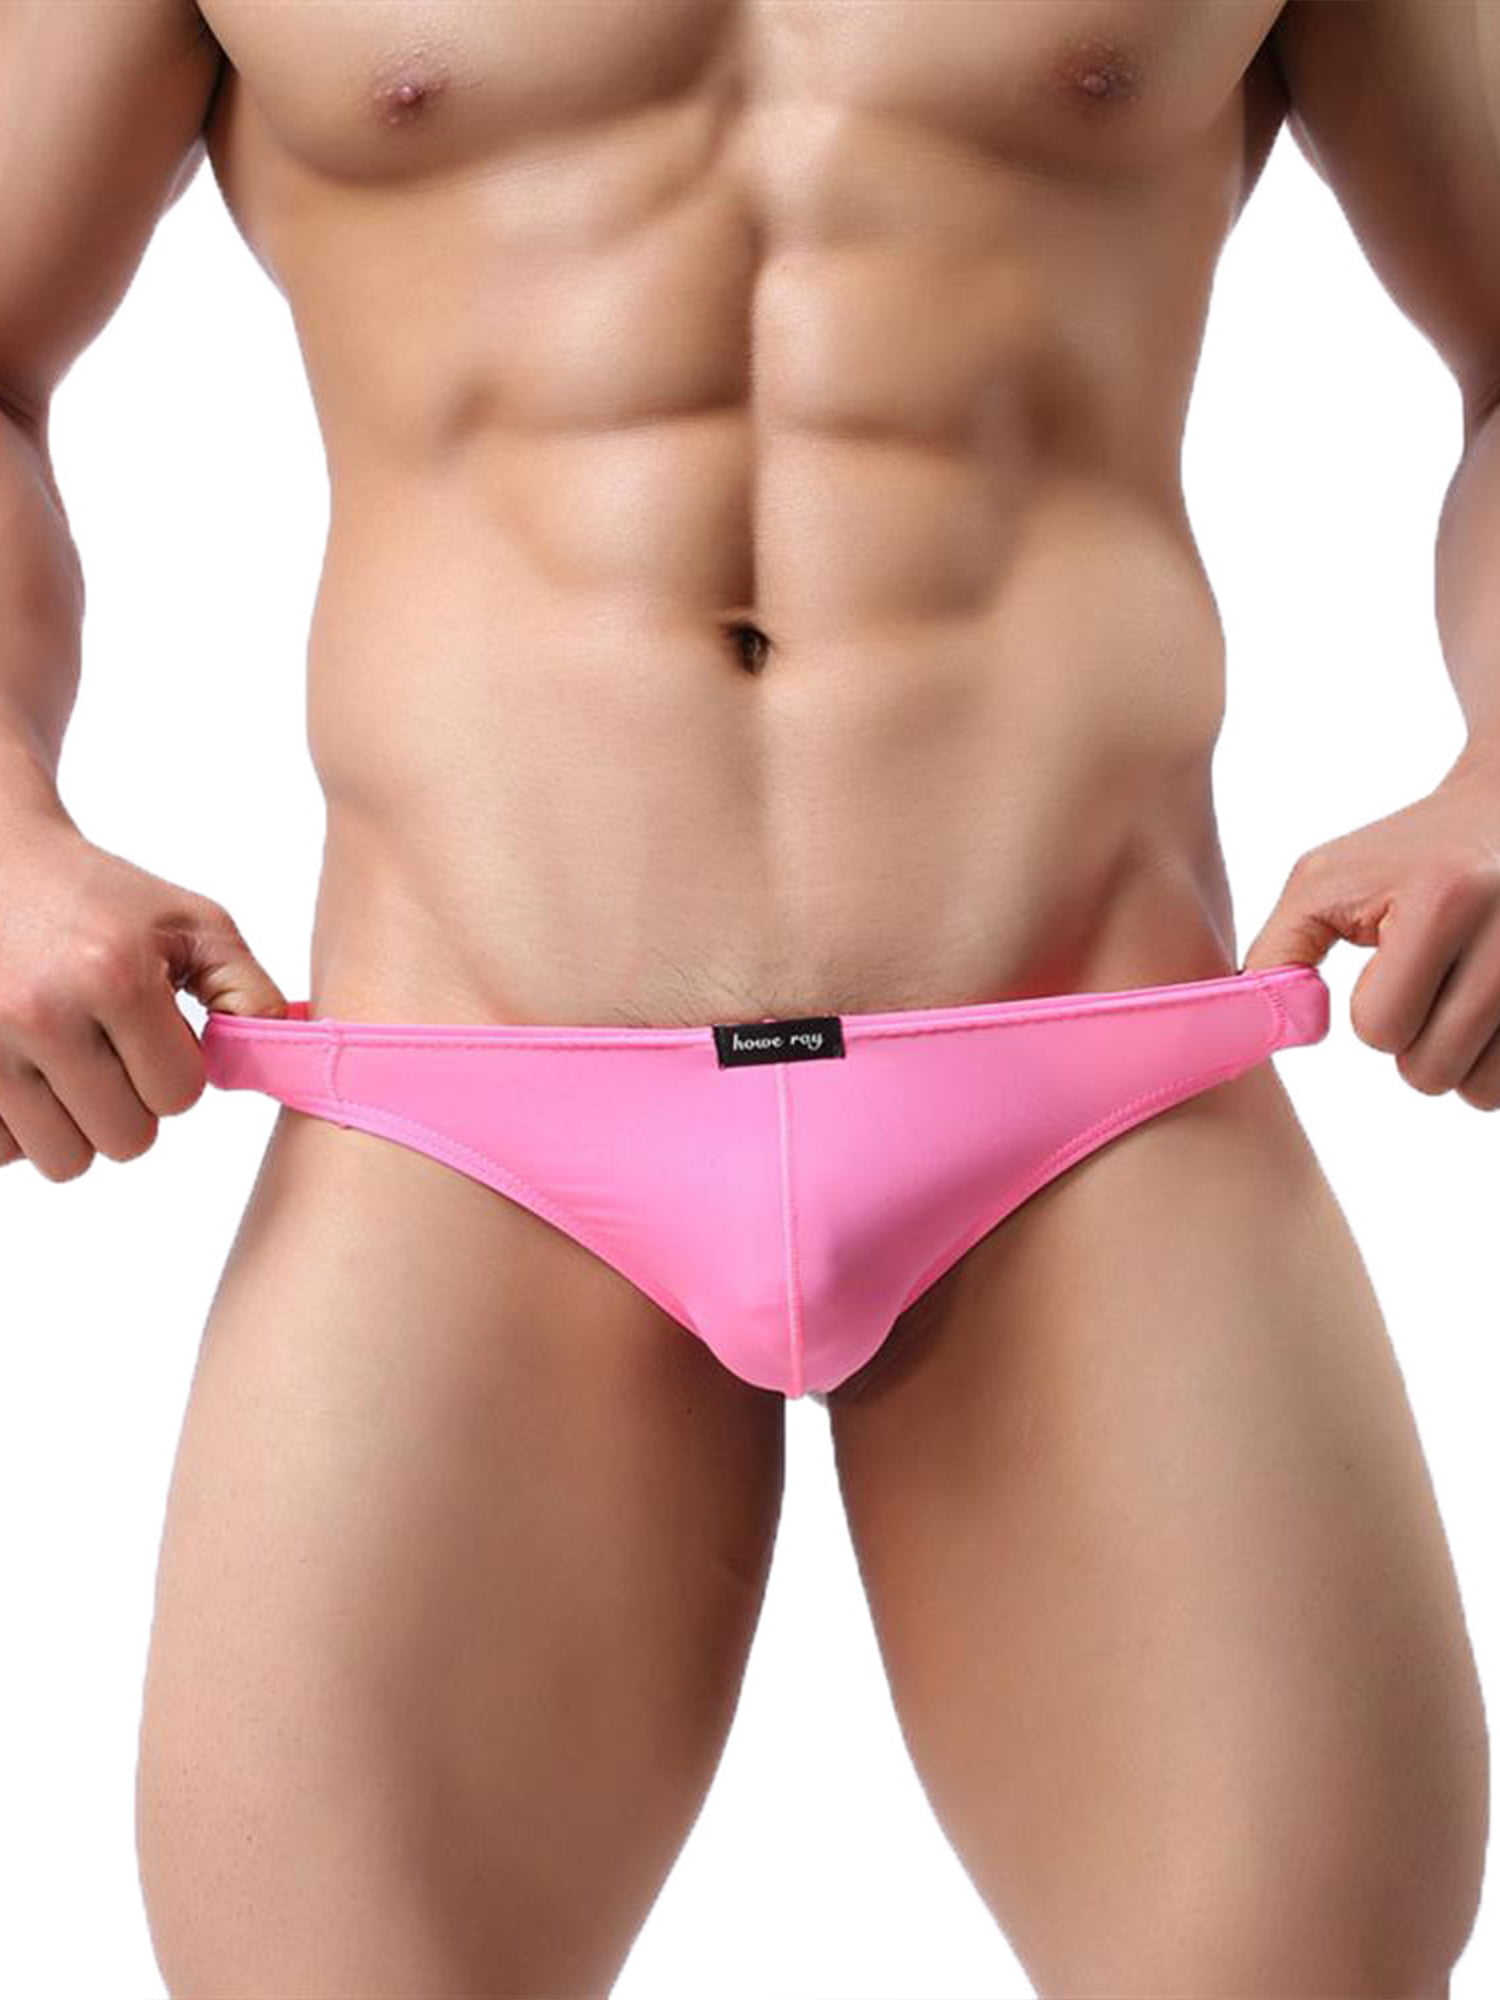 Eleluny Men Plain Briefs Thongs G-String Panties Underwear Erotic